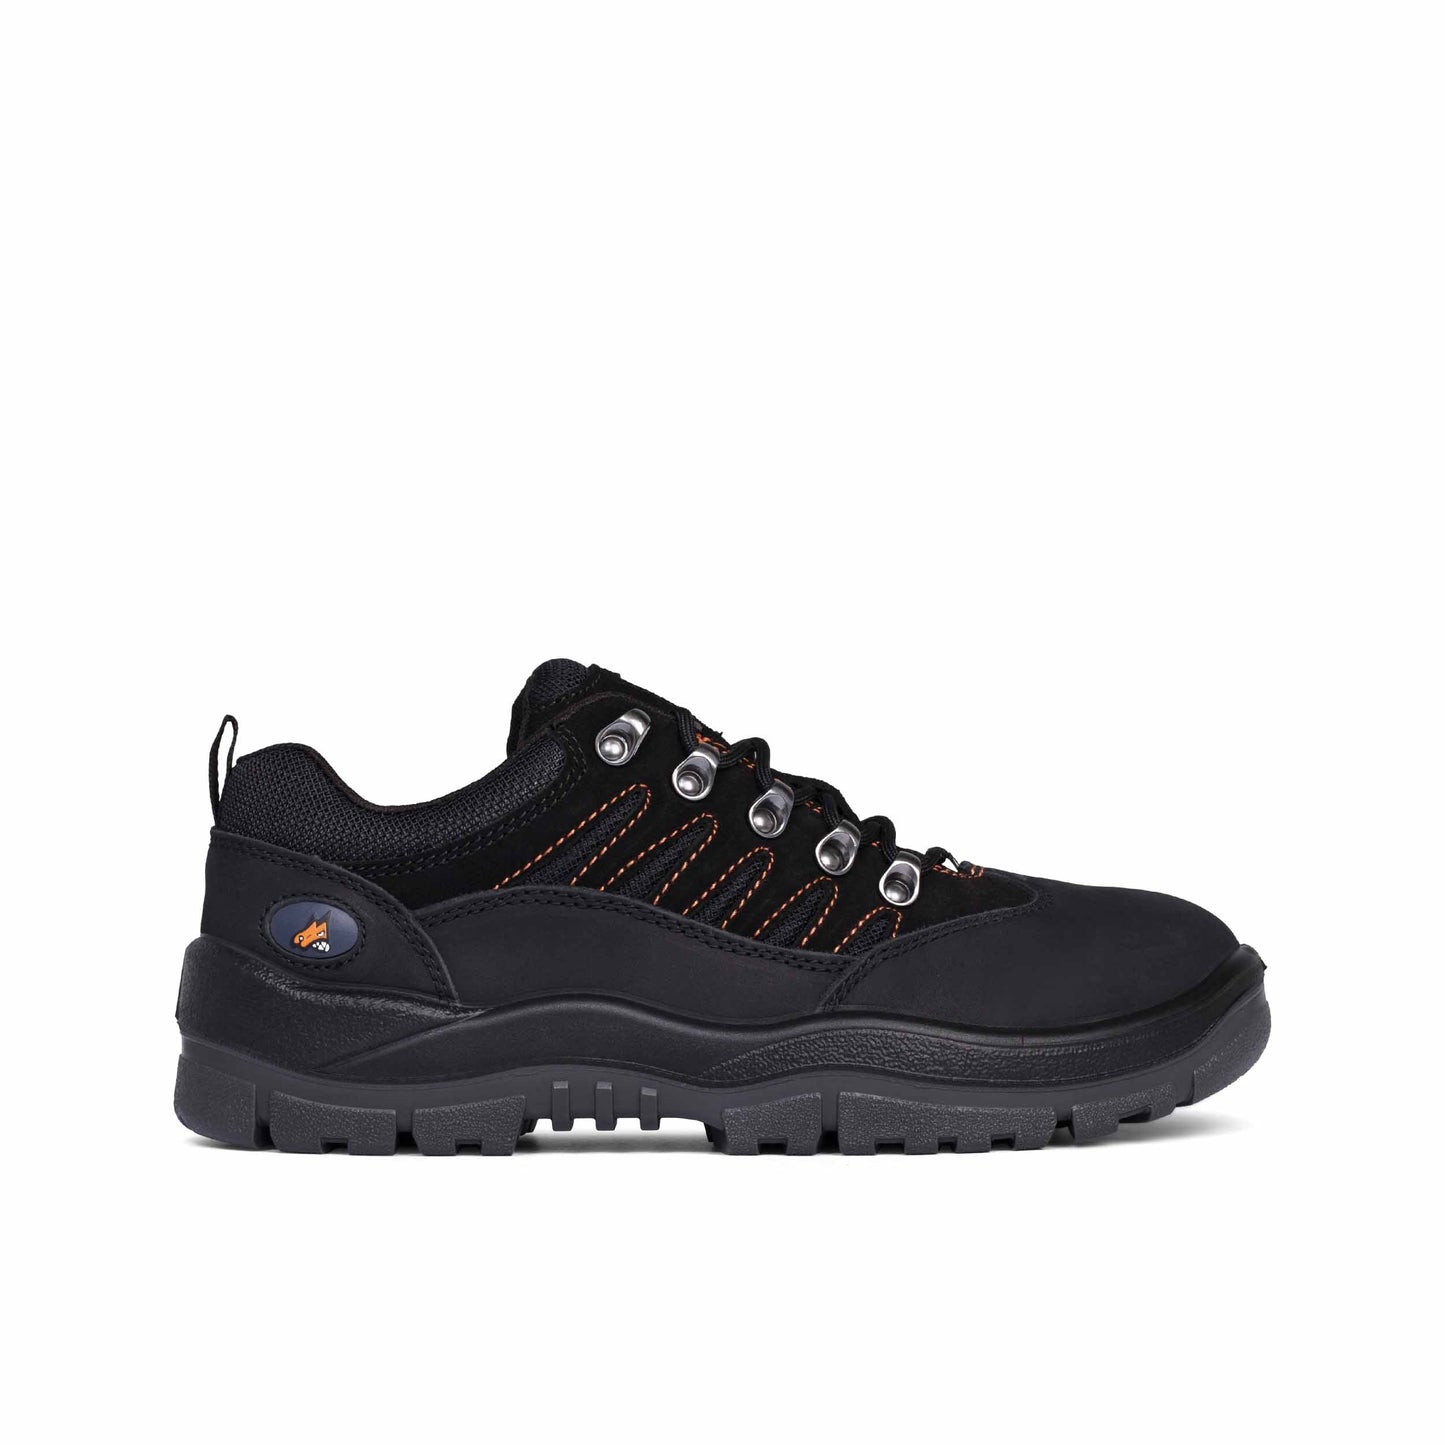 Mongrel Black Hiker Shoe - 390080 | Blue Heeler Boots